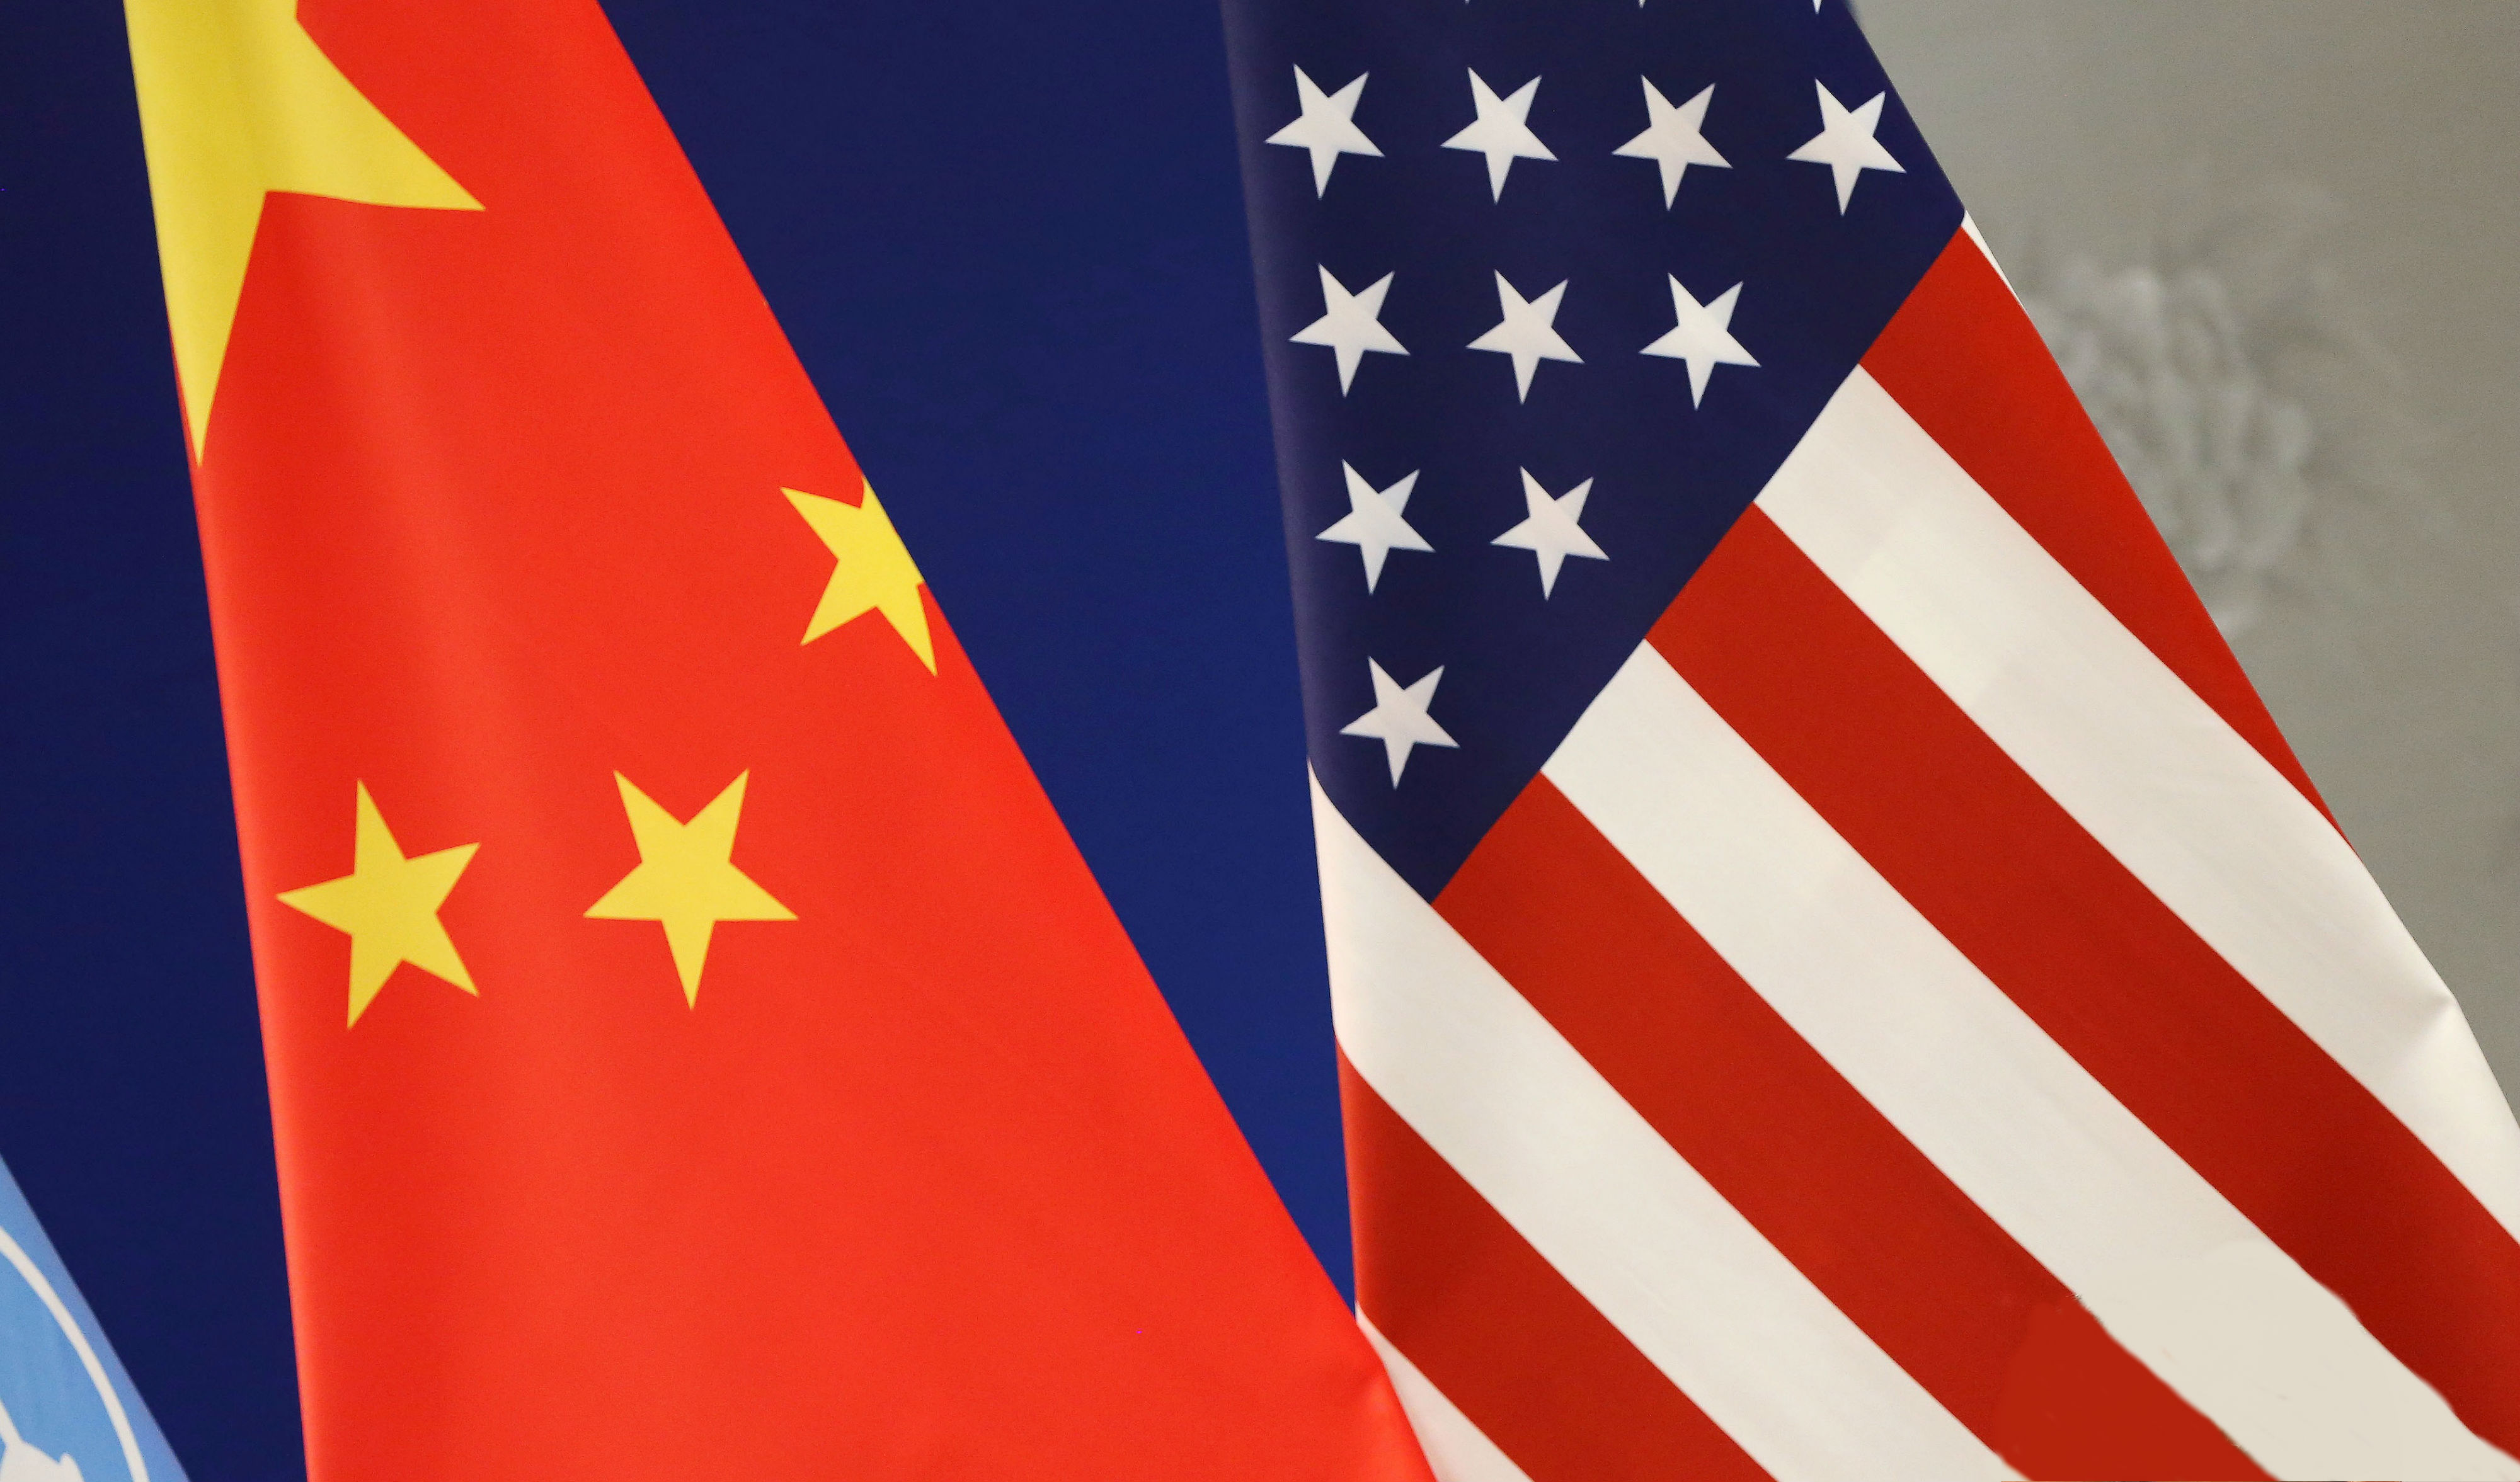 Banderas de China y Estados Unidos en un evento de la ONU; los presidentes Trump y Xi Jinping sostendrán una reunión en abril (AP, archivo)